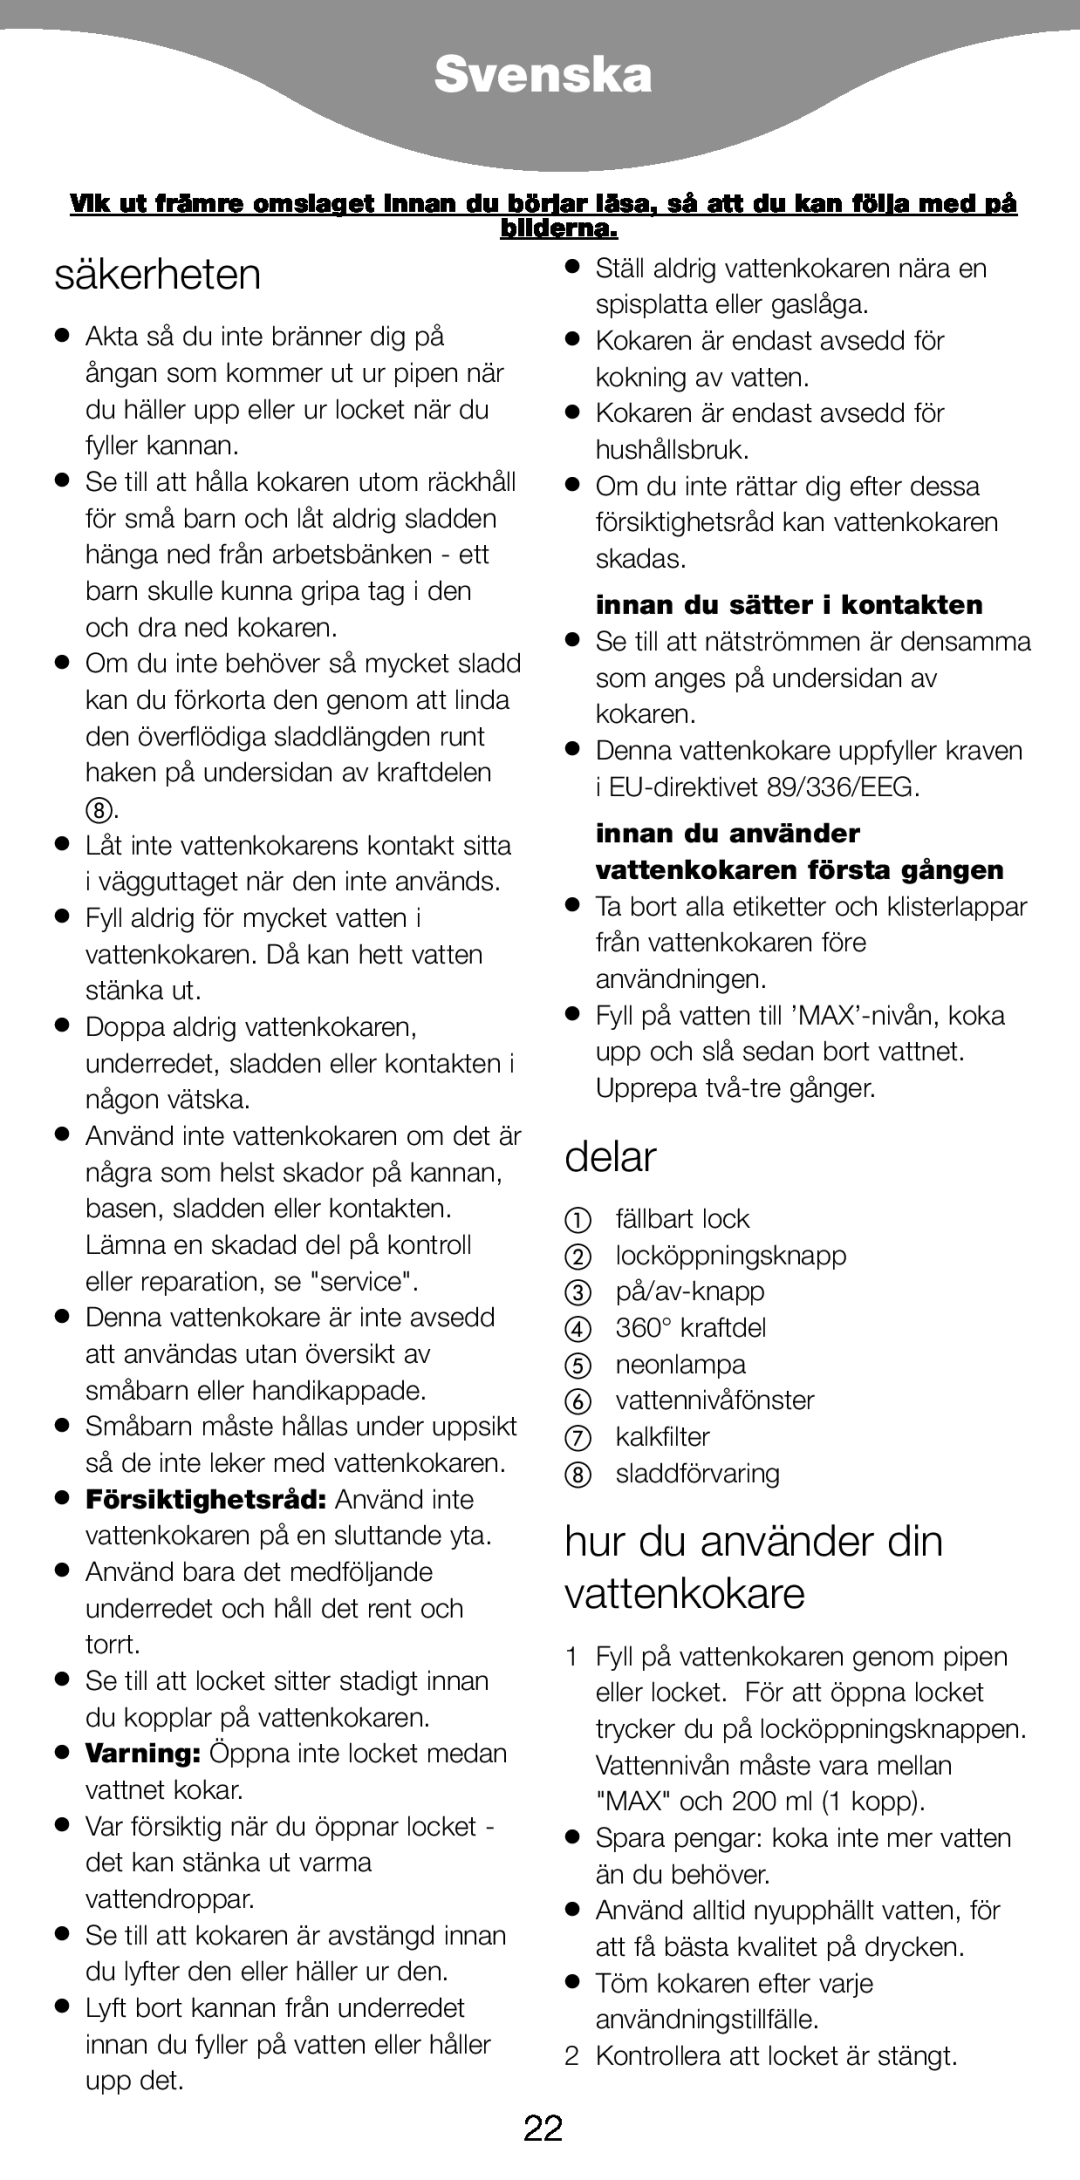 Kenwood JK940, JK840 manual Svenska, säkerheten, delar, hur du använder din vattenkokare, innan du sätter i kontakten 